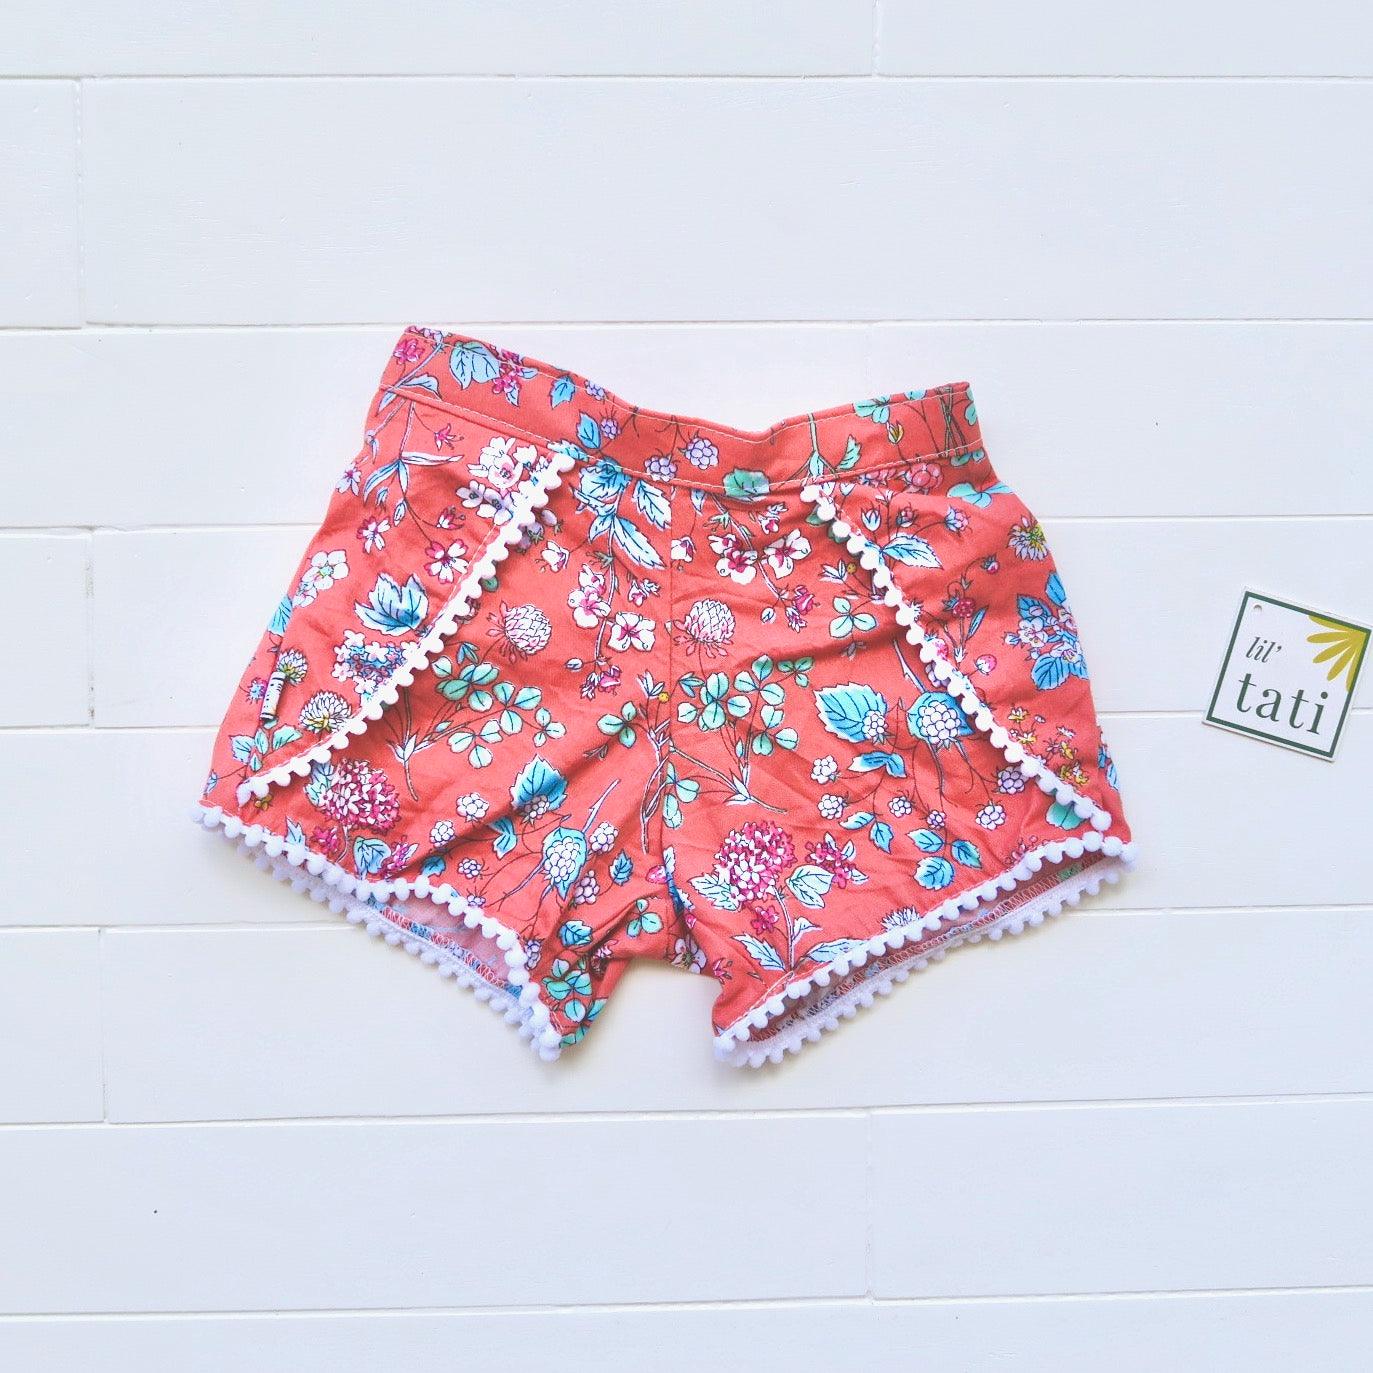 Pompom Shorts in Red Orange Garden Print - Lil' Tati